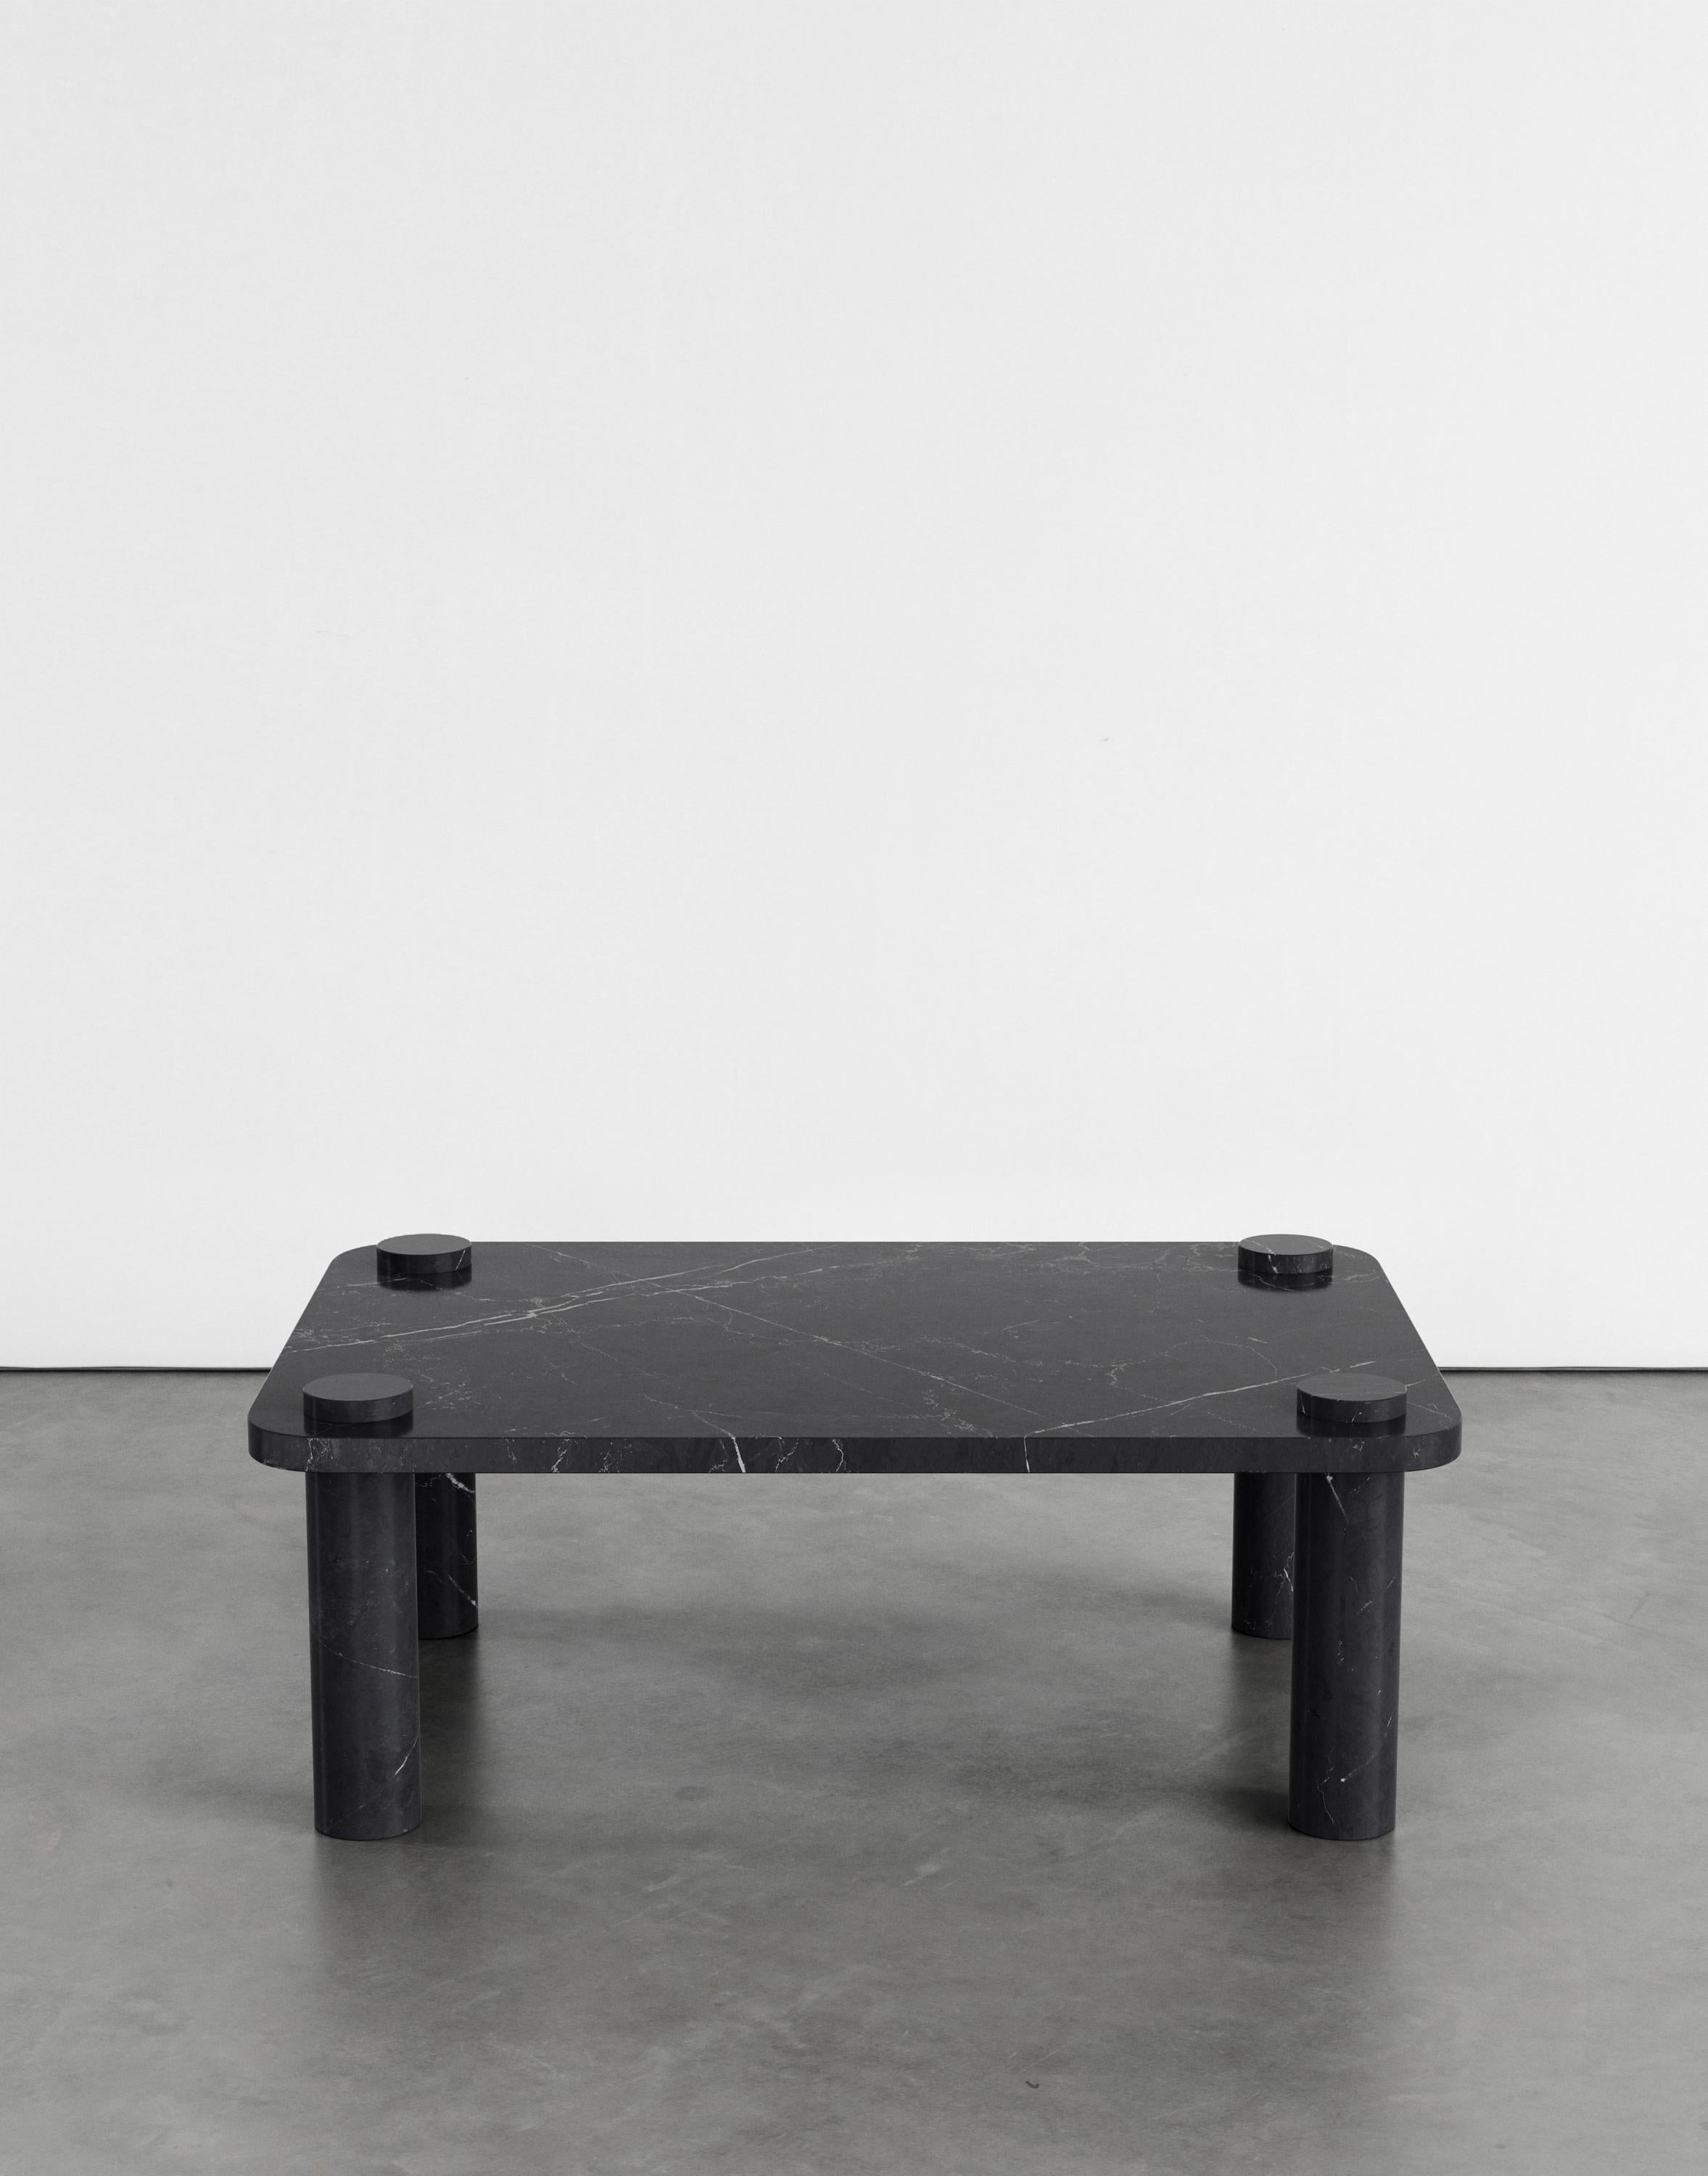 Table basse Simone 107 par Agglomerati 
Dimensions : D 70 x L 100 x H 36 cm 
Matériaux : Marquina noir. Disponible dans d'autres pierres. 

Agglomerati est un studio basé à Londres qui crée des meubles en pierre distinctifs. Fondé en 2019 par le